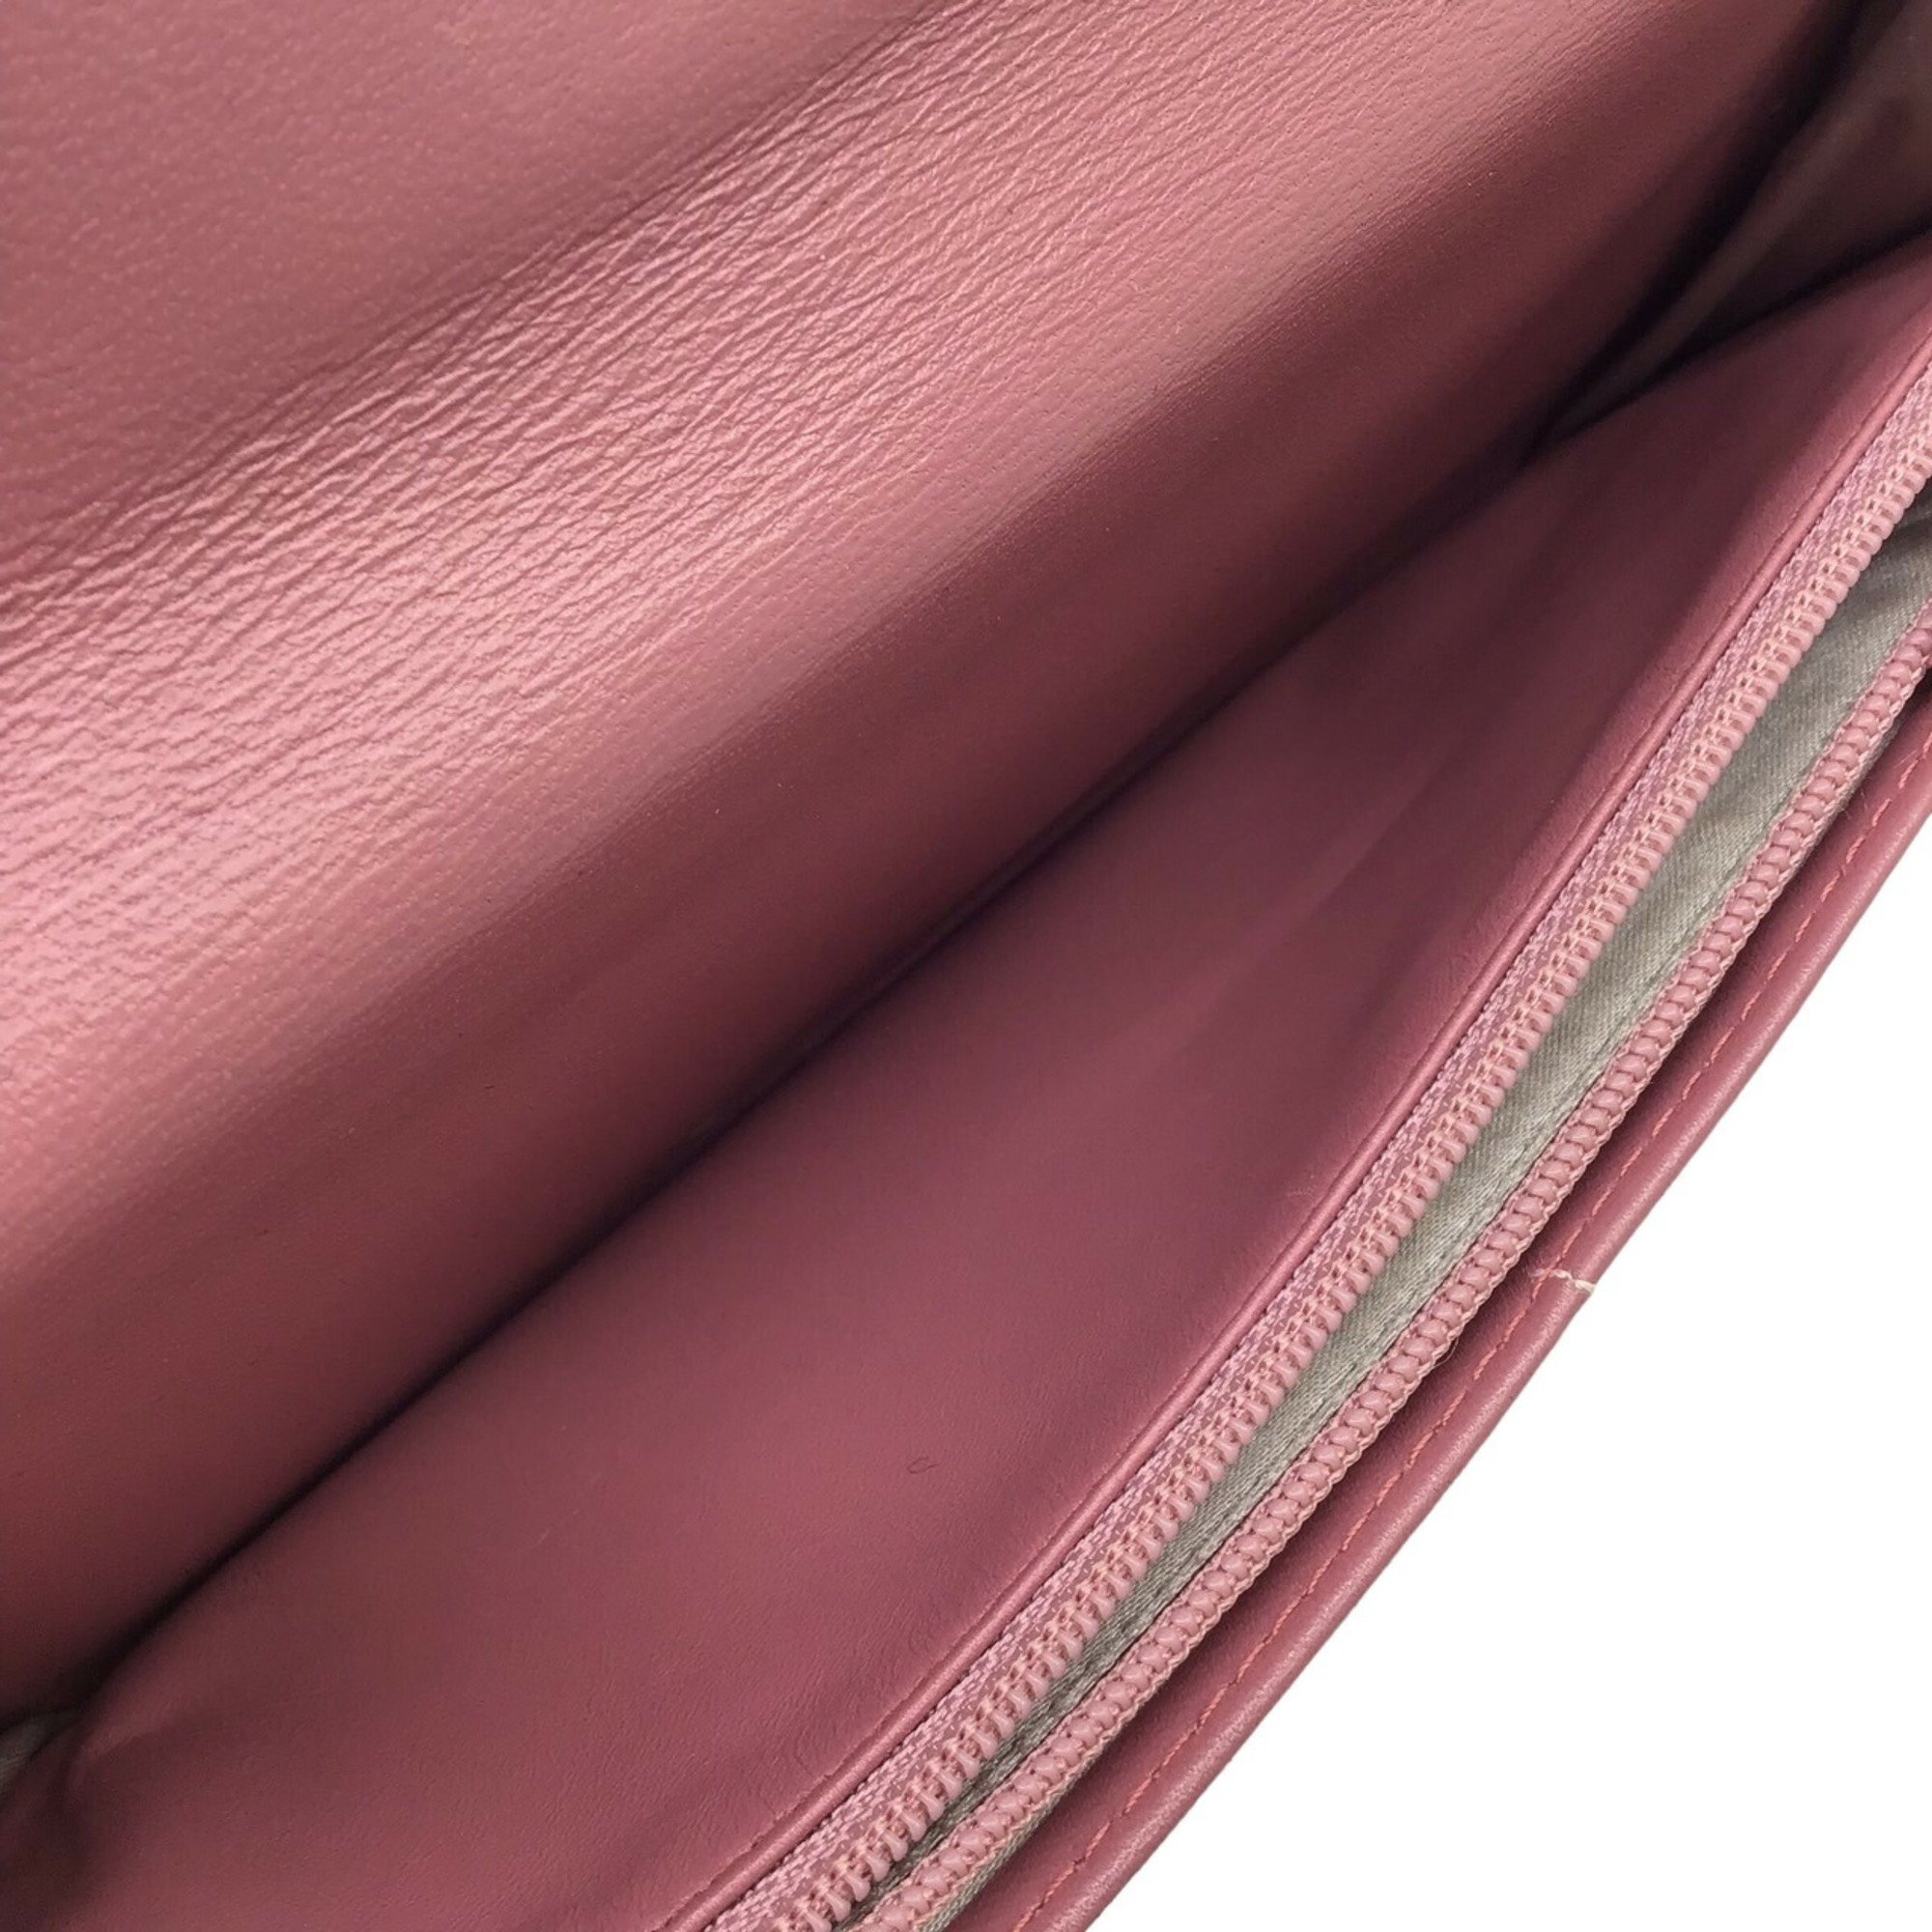 CHANEL New Travel Line Long Wallet Nylon Jacquard Pink Bi-fold Flap Women's